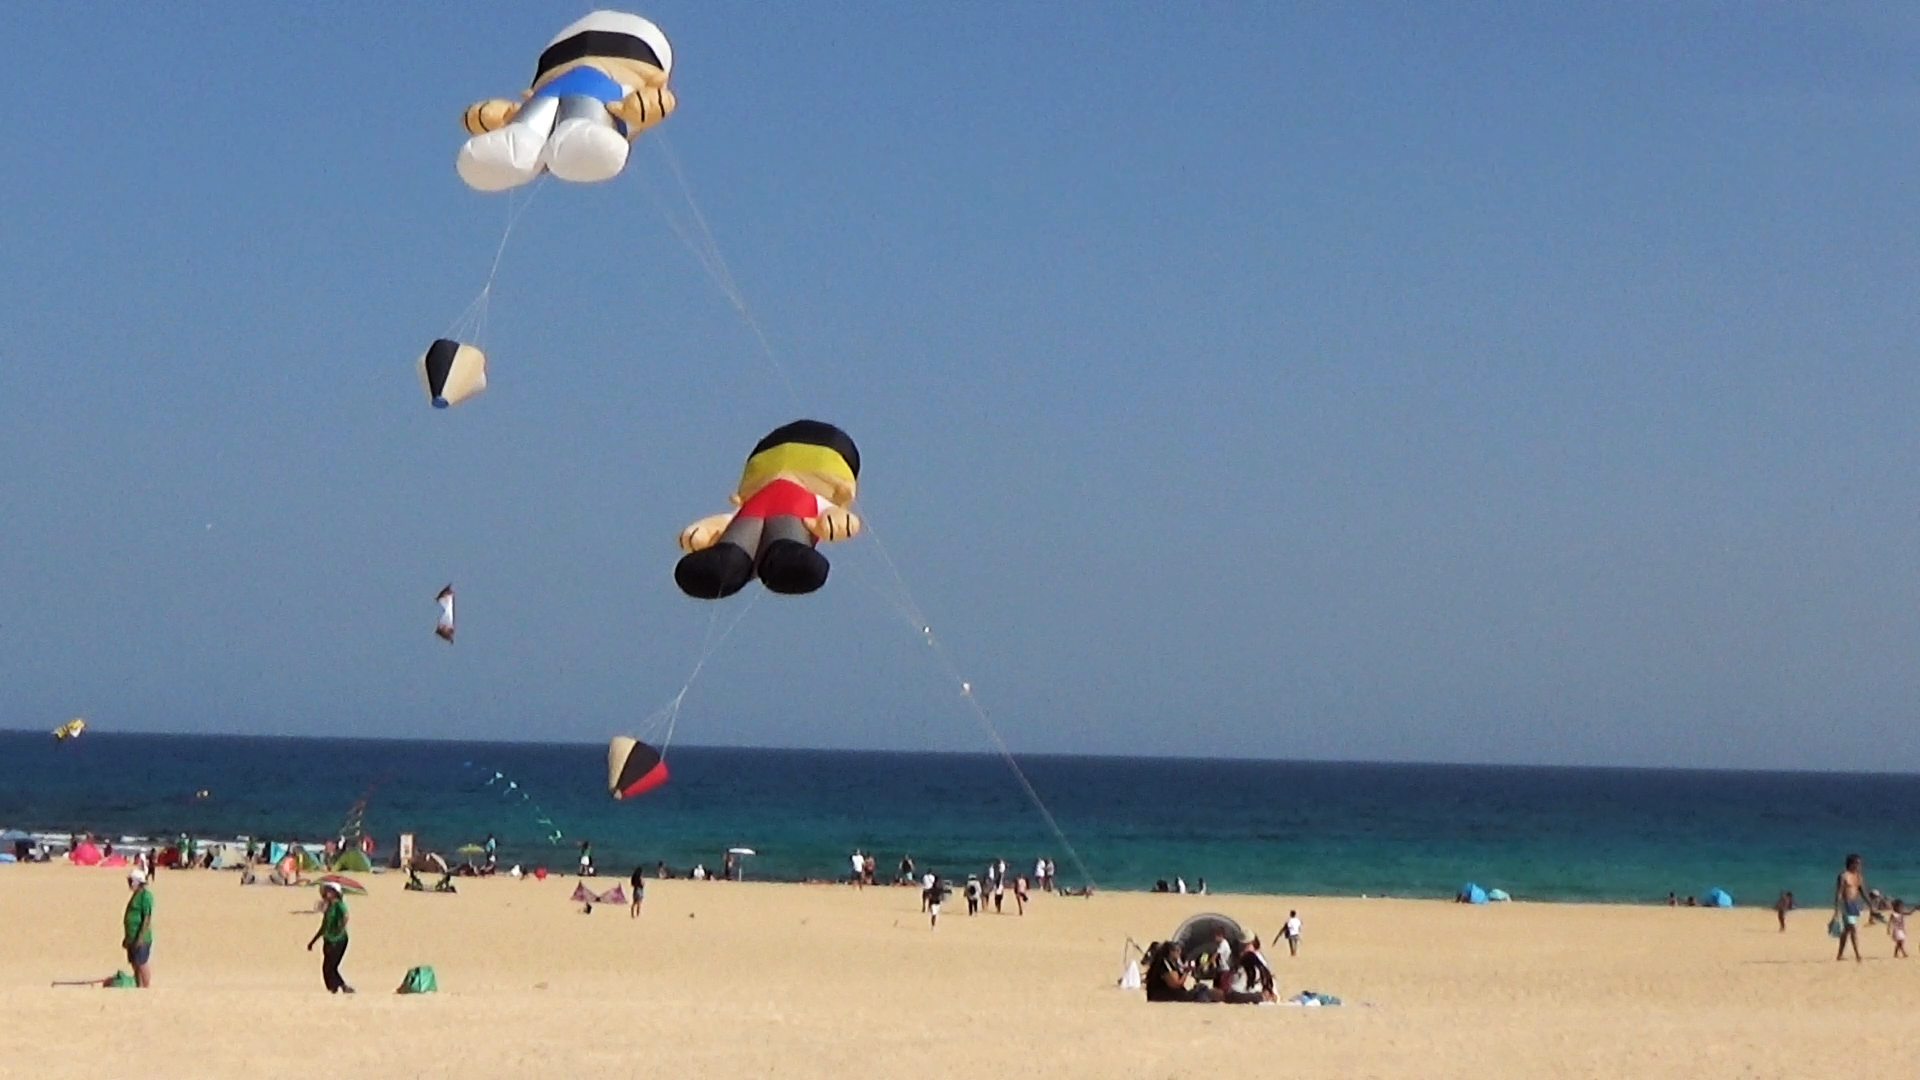 Fuerteventura Kite Festival 2017